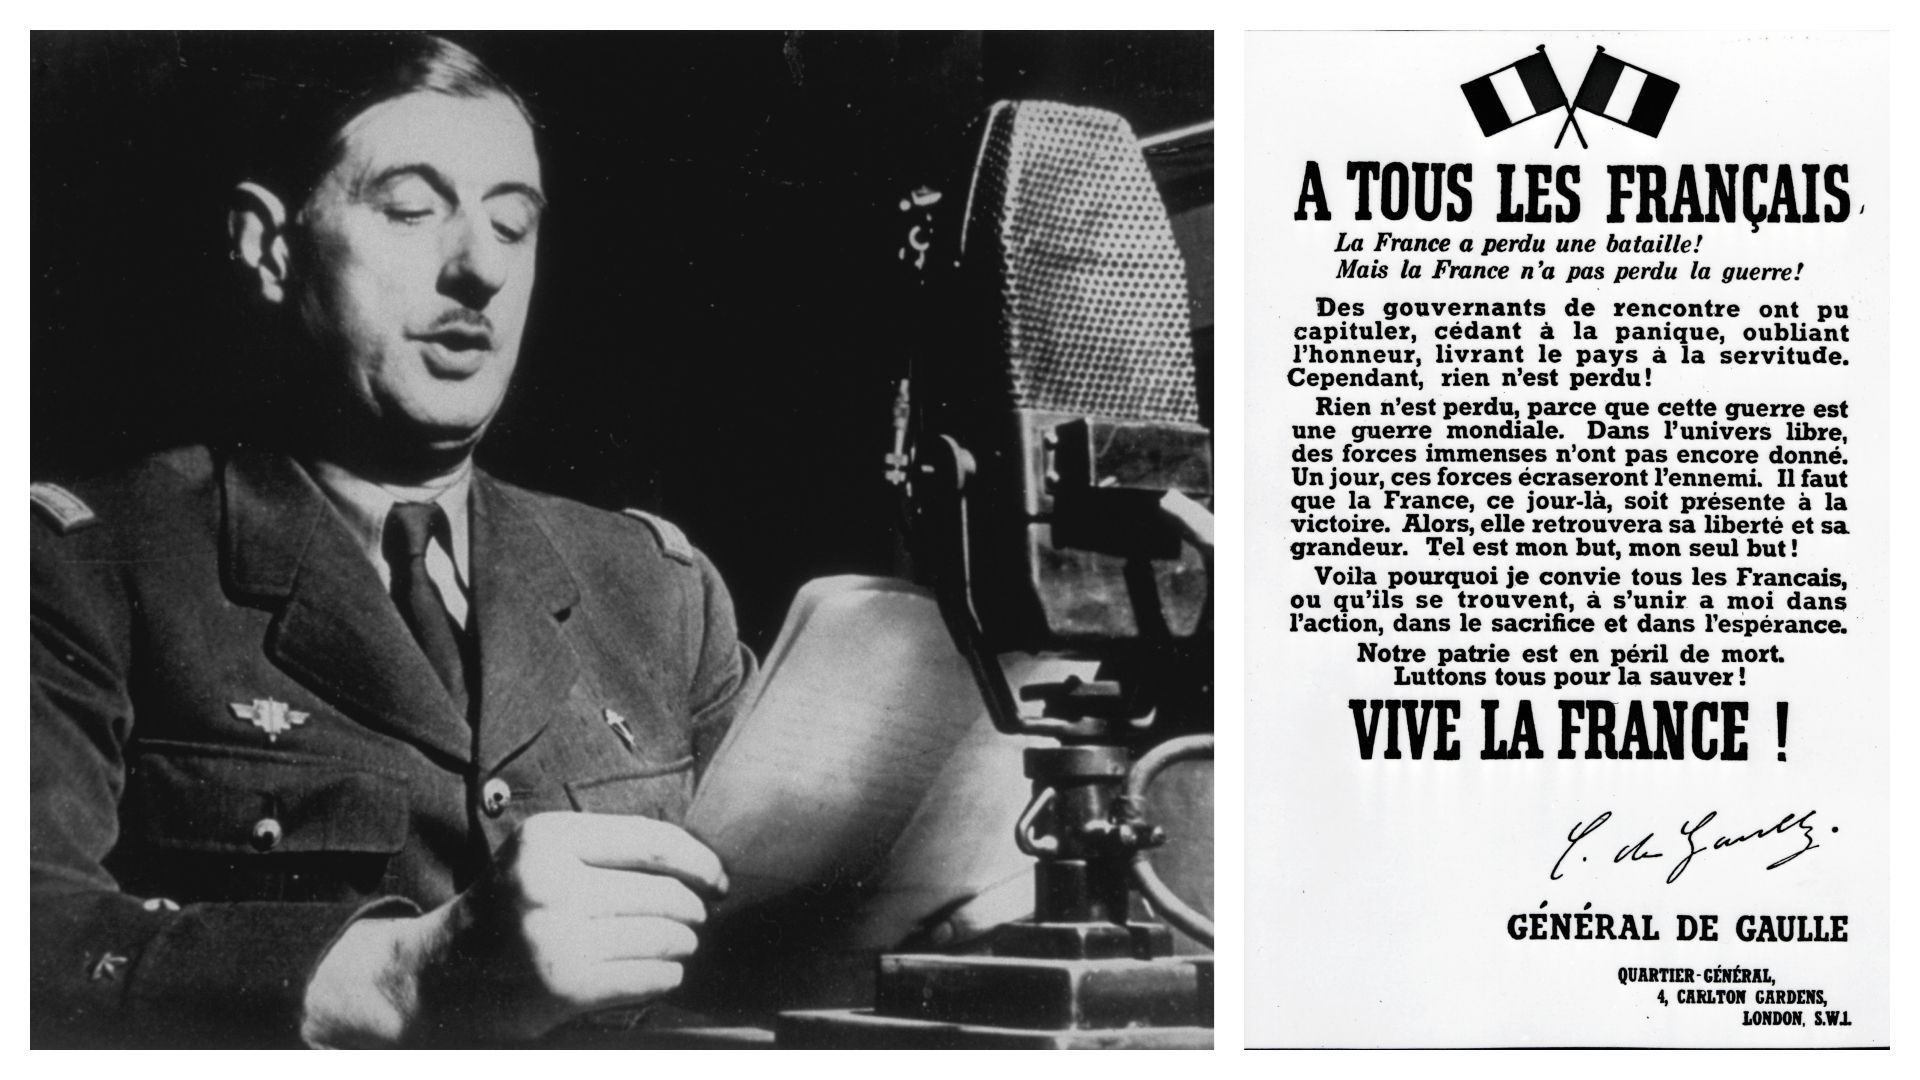 Charles de Gaulle "rejoue" l'appel, en 1941 